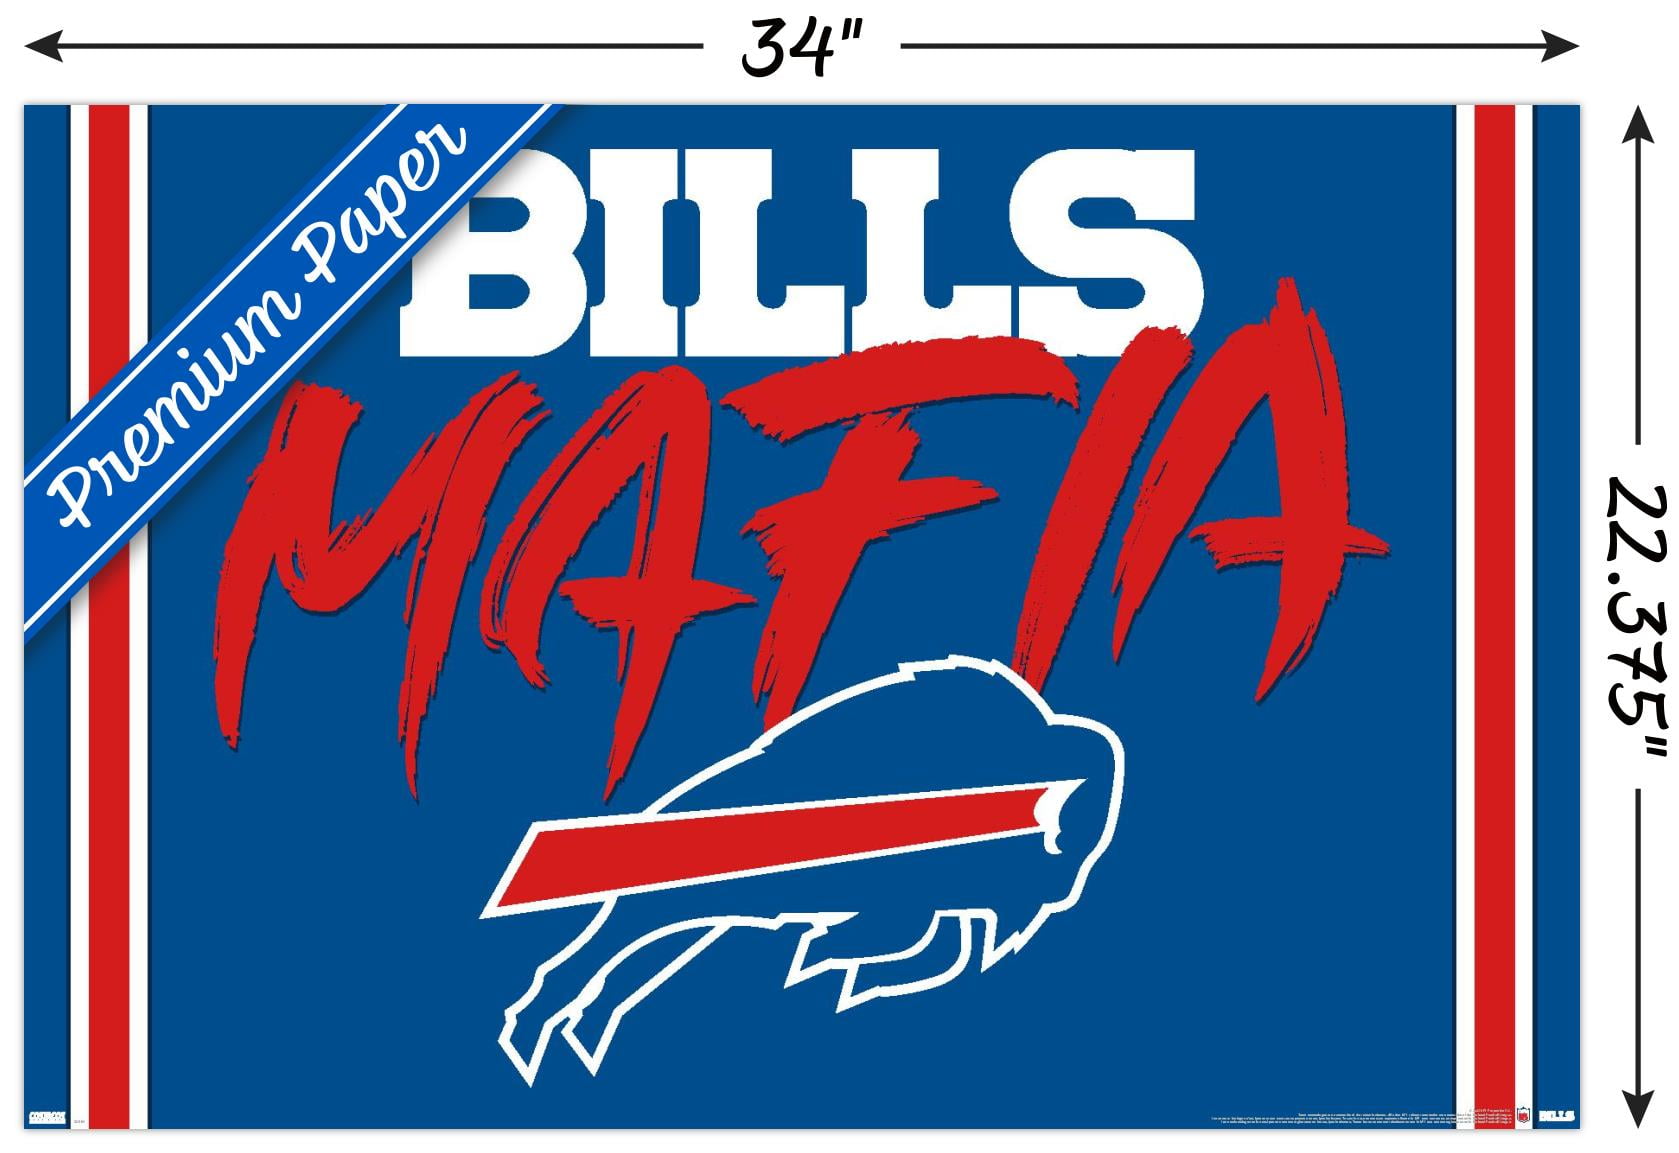 BUFFALO BILLS BILLS Mafia Iron On Patch Free Shipping $2.99 - PicClick